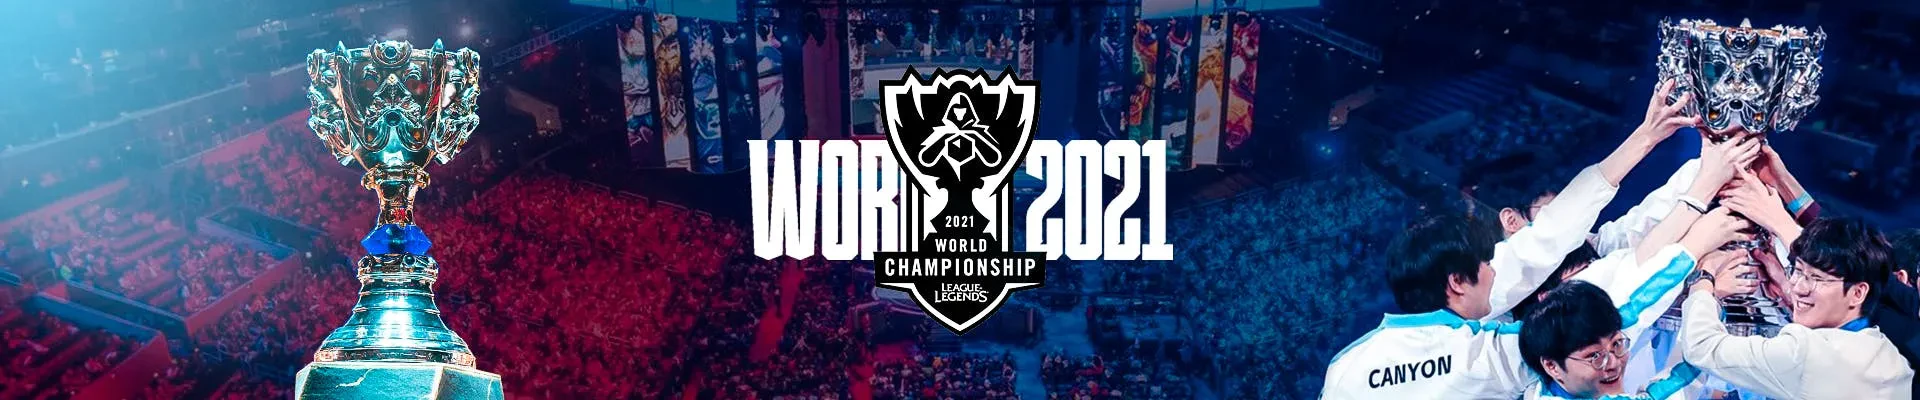 header league of legends worlds 2021